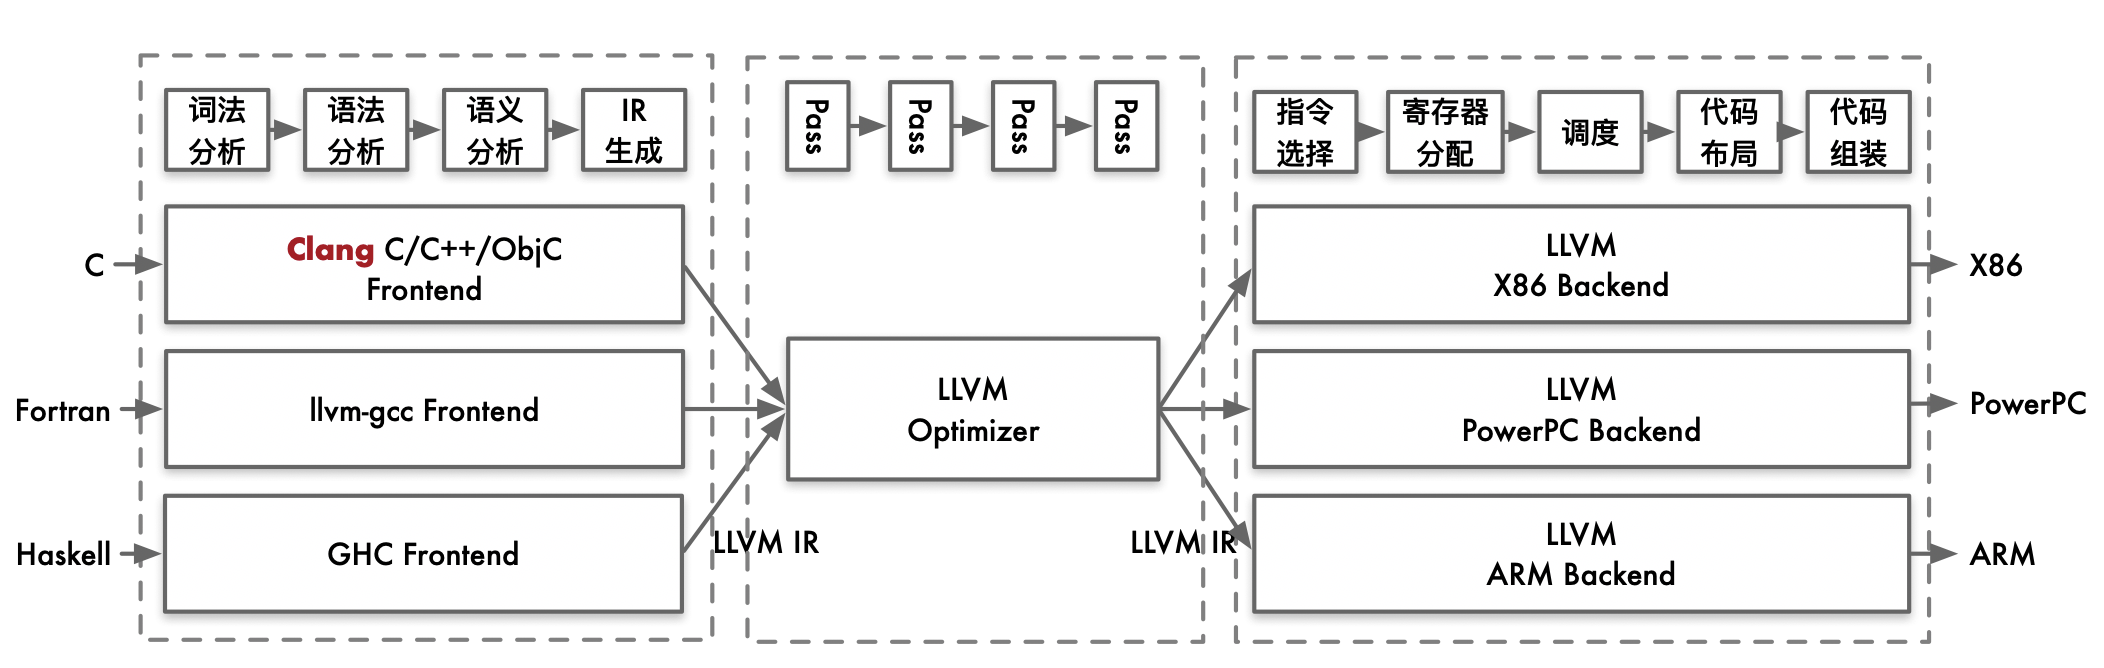 LLVM架构图